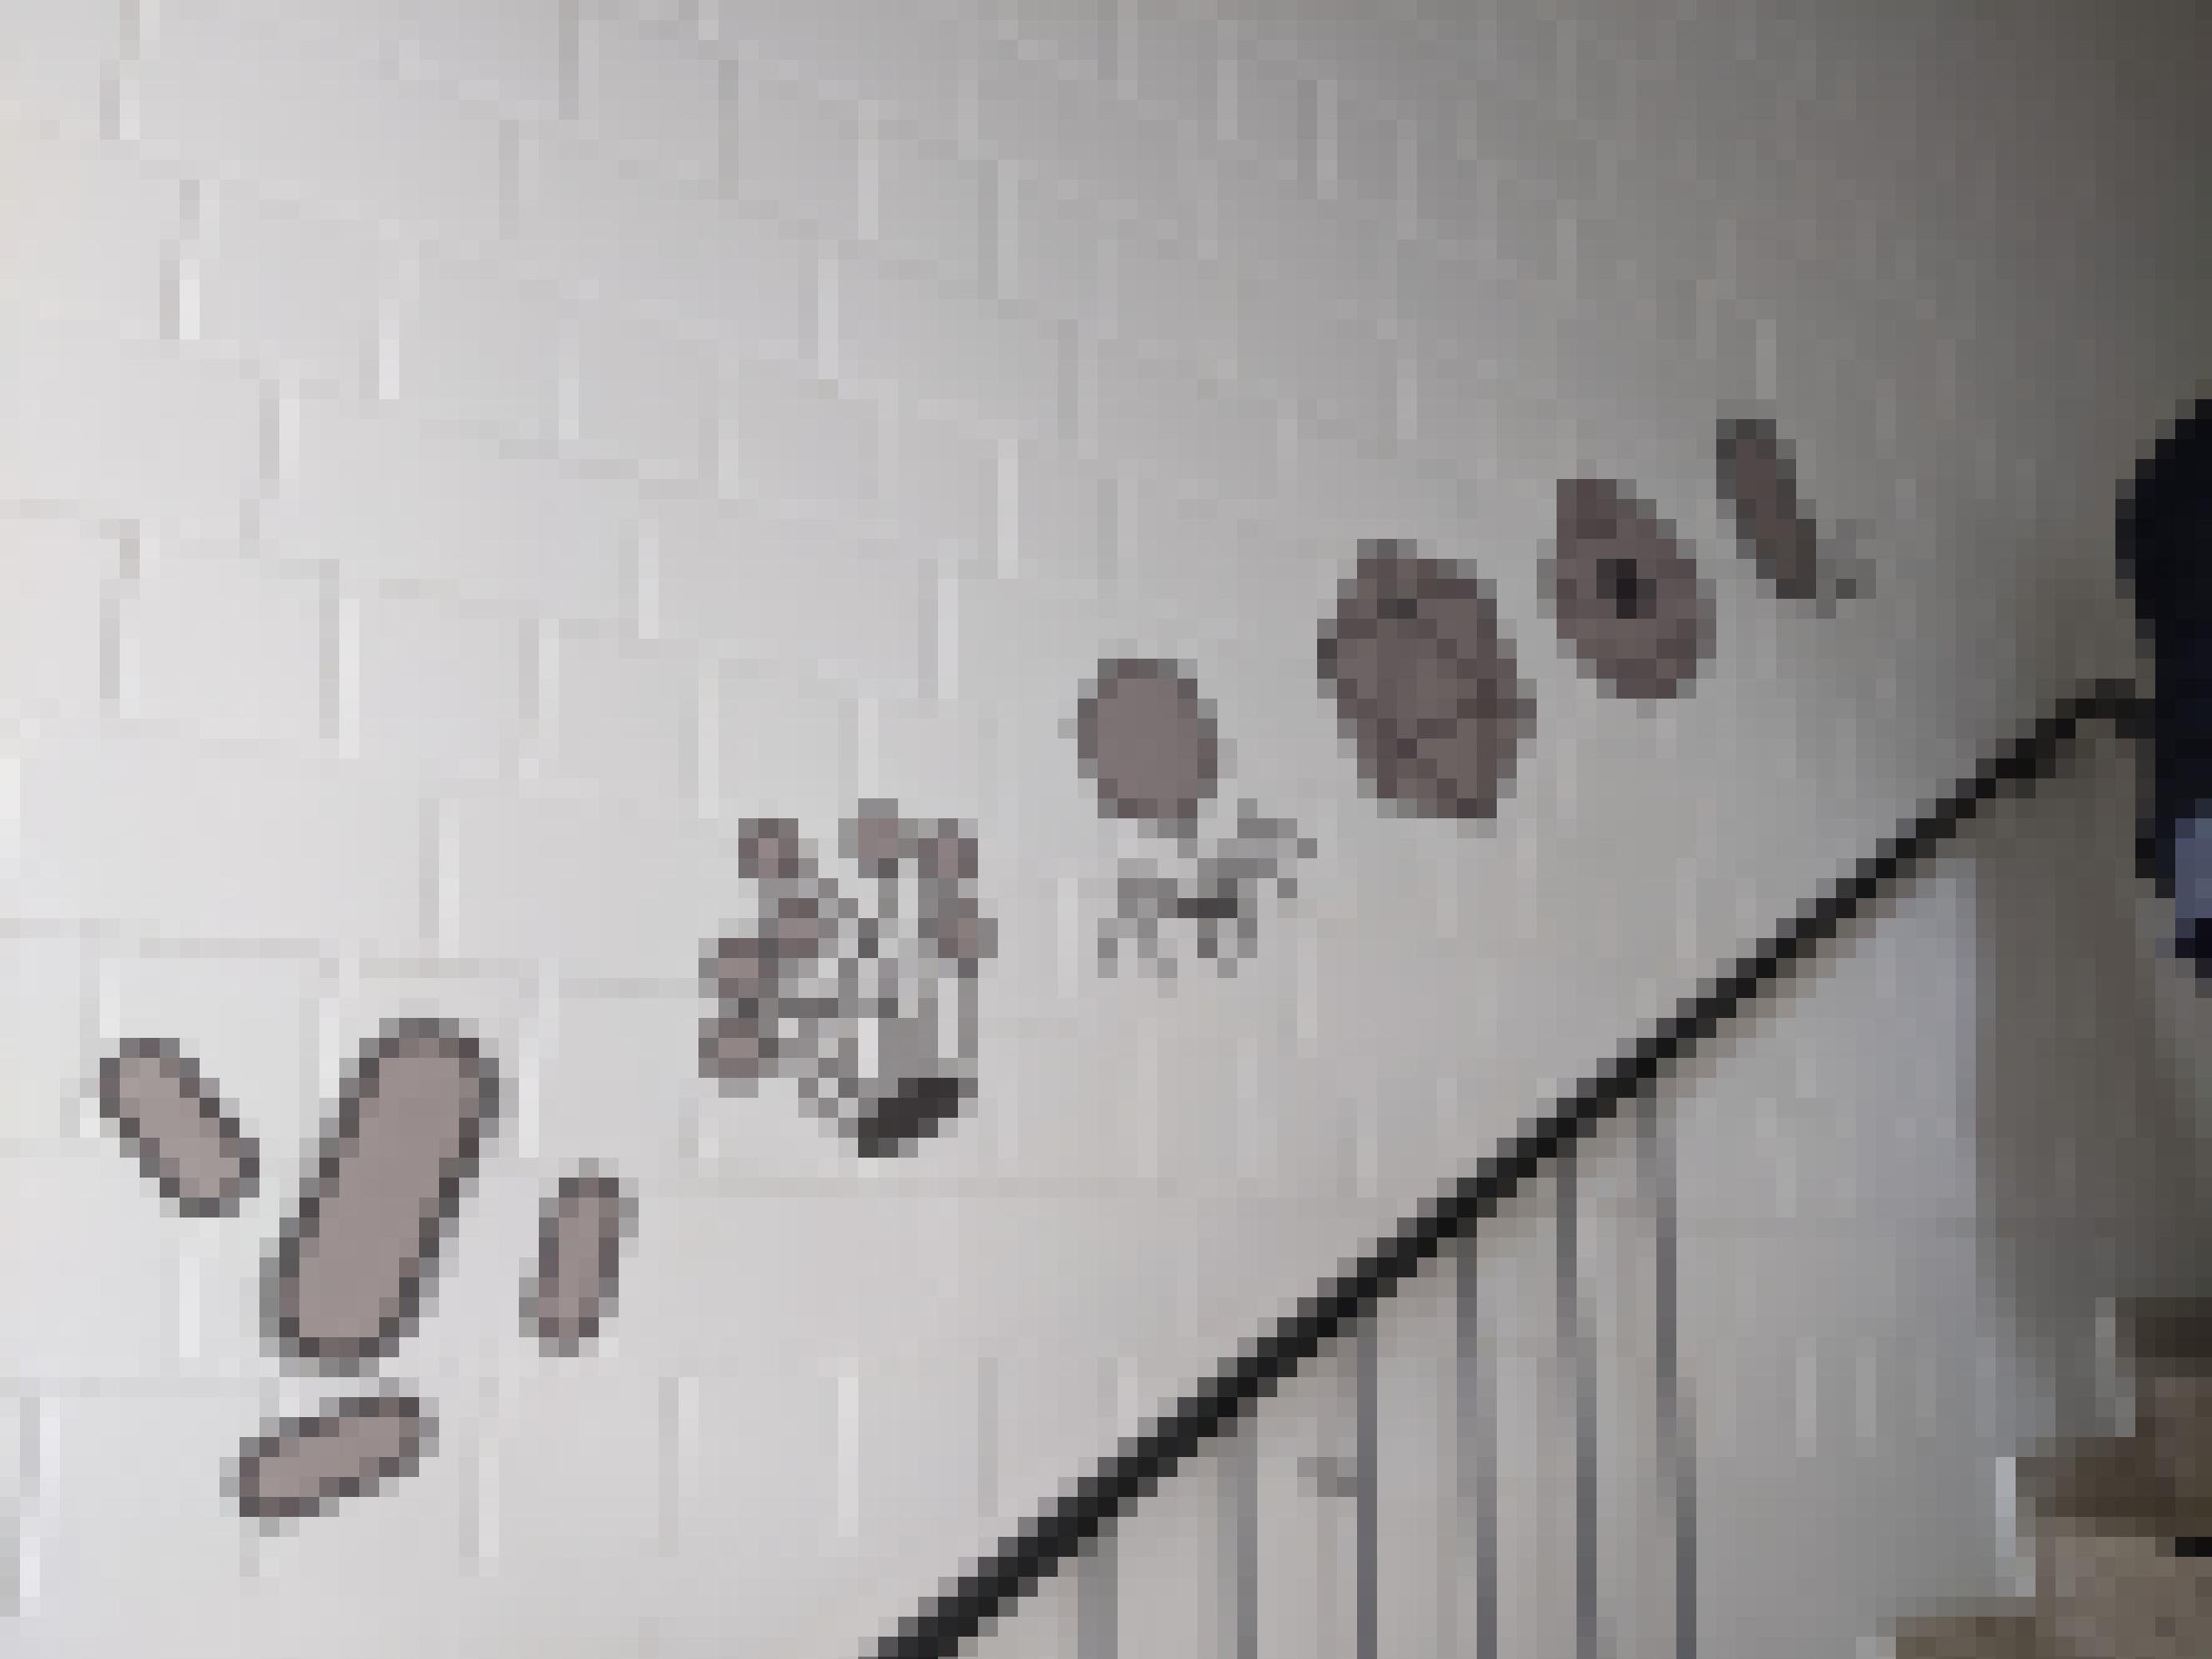 Auf einer weiß gestrichenen Backsteinwand sind in grau und schwarz stilisiert verschiedene Mikroorganismen aufgemalt, unter anderem eine Phage. Darunter ist ein Treppengelände zu sehen.